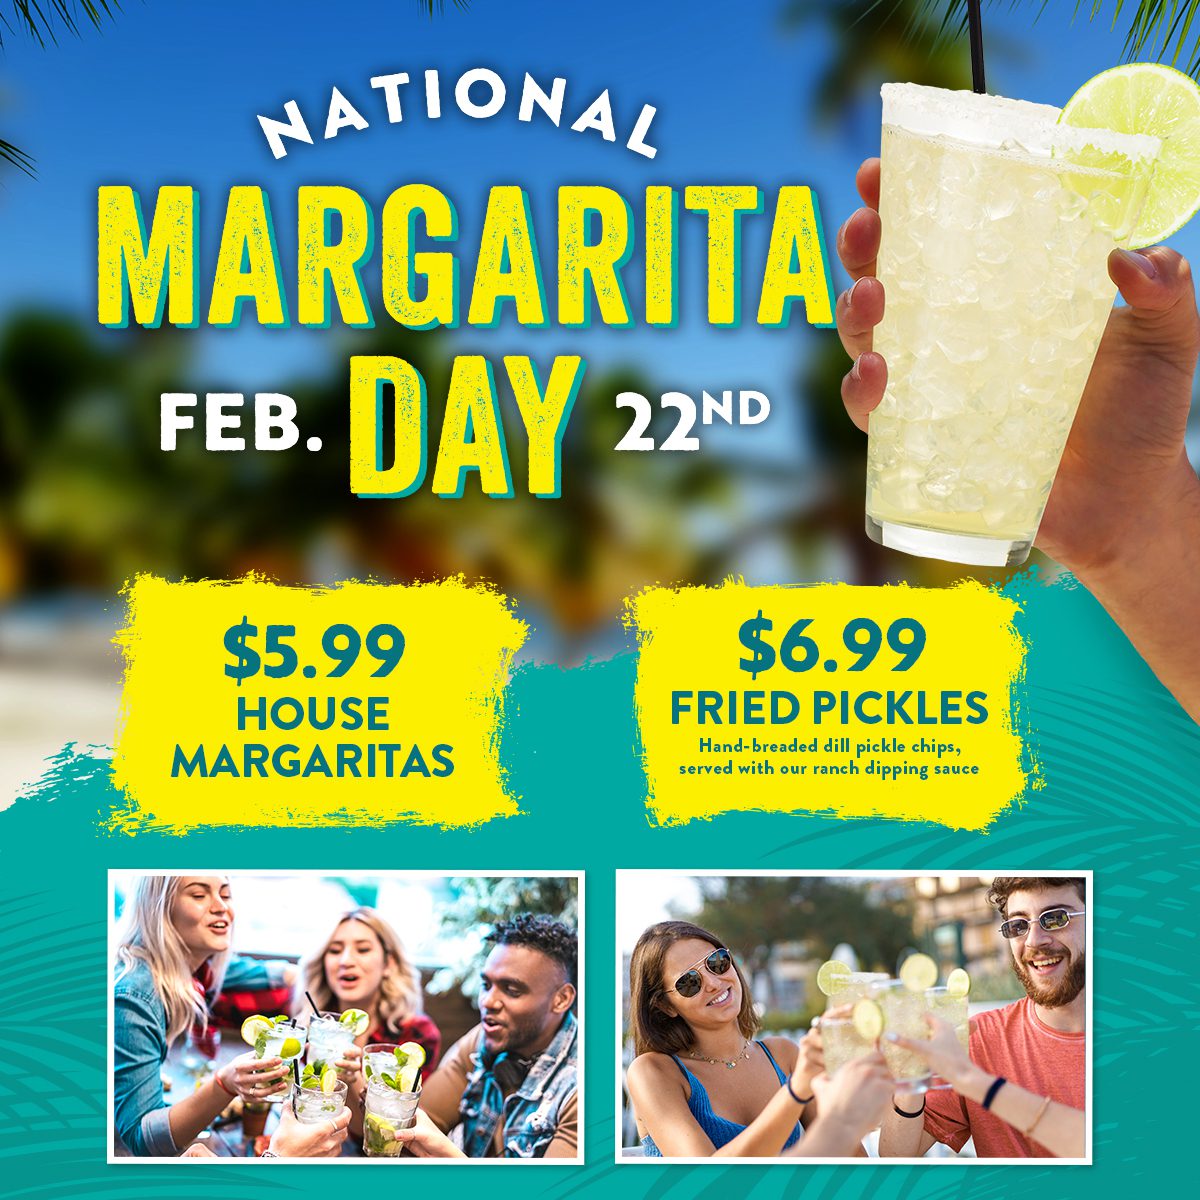 National Margarita Day at Margaritaville - February 22nd